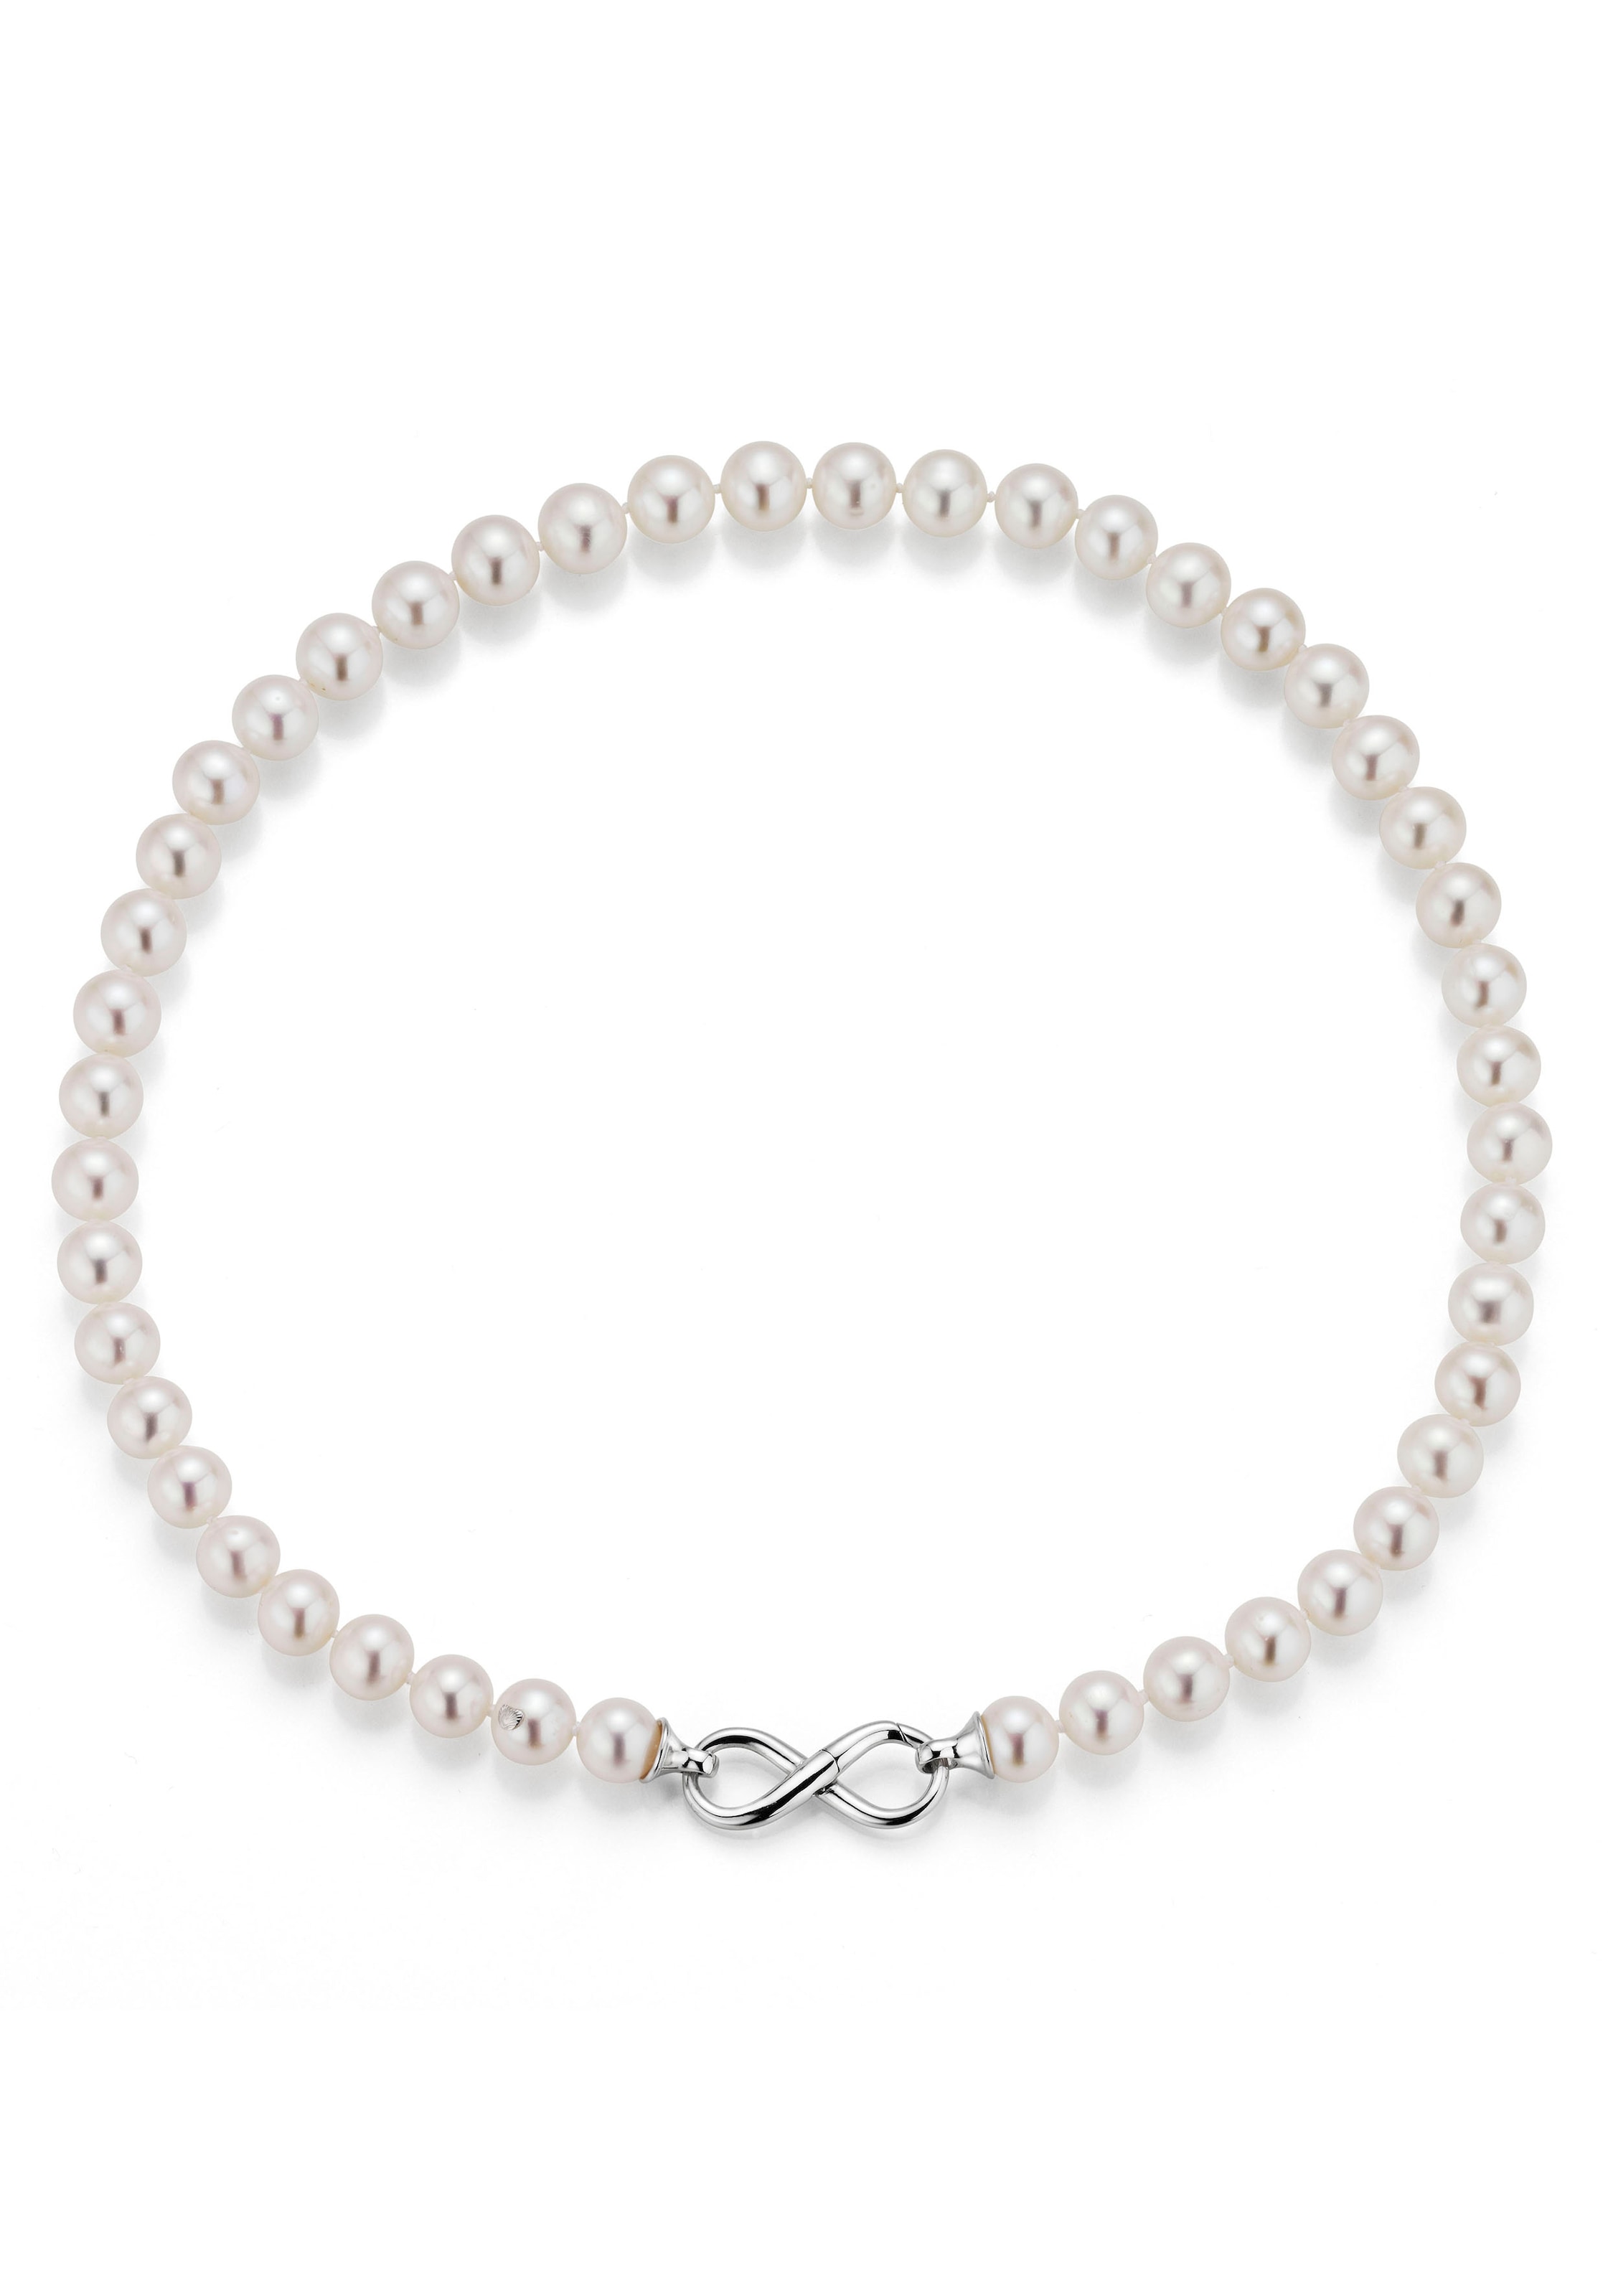 Perlenkette »Bellagio - Infinity/Unendlichkeitsschleife, B4-S, B4-W-7«, Made in...